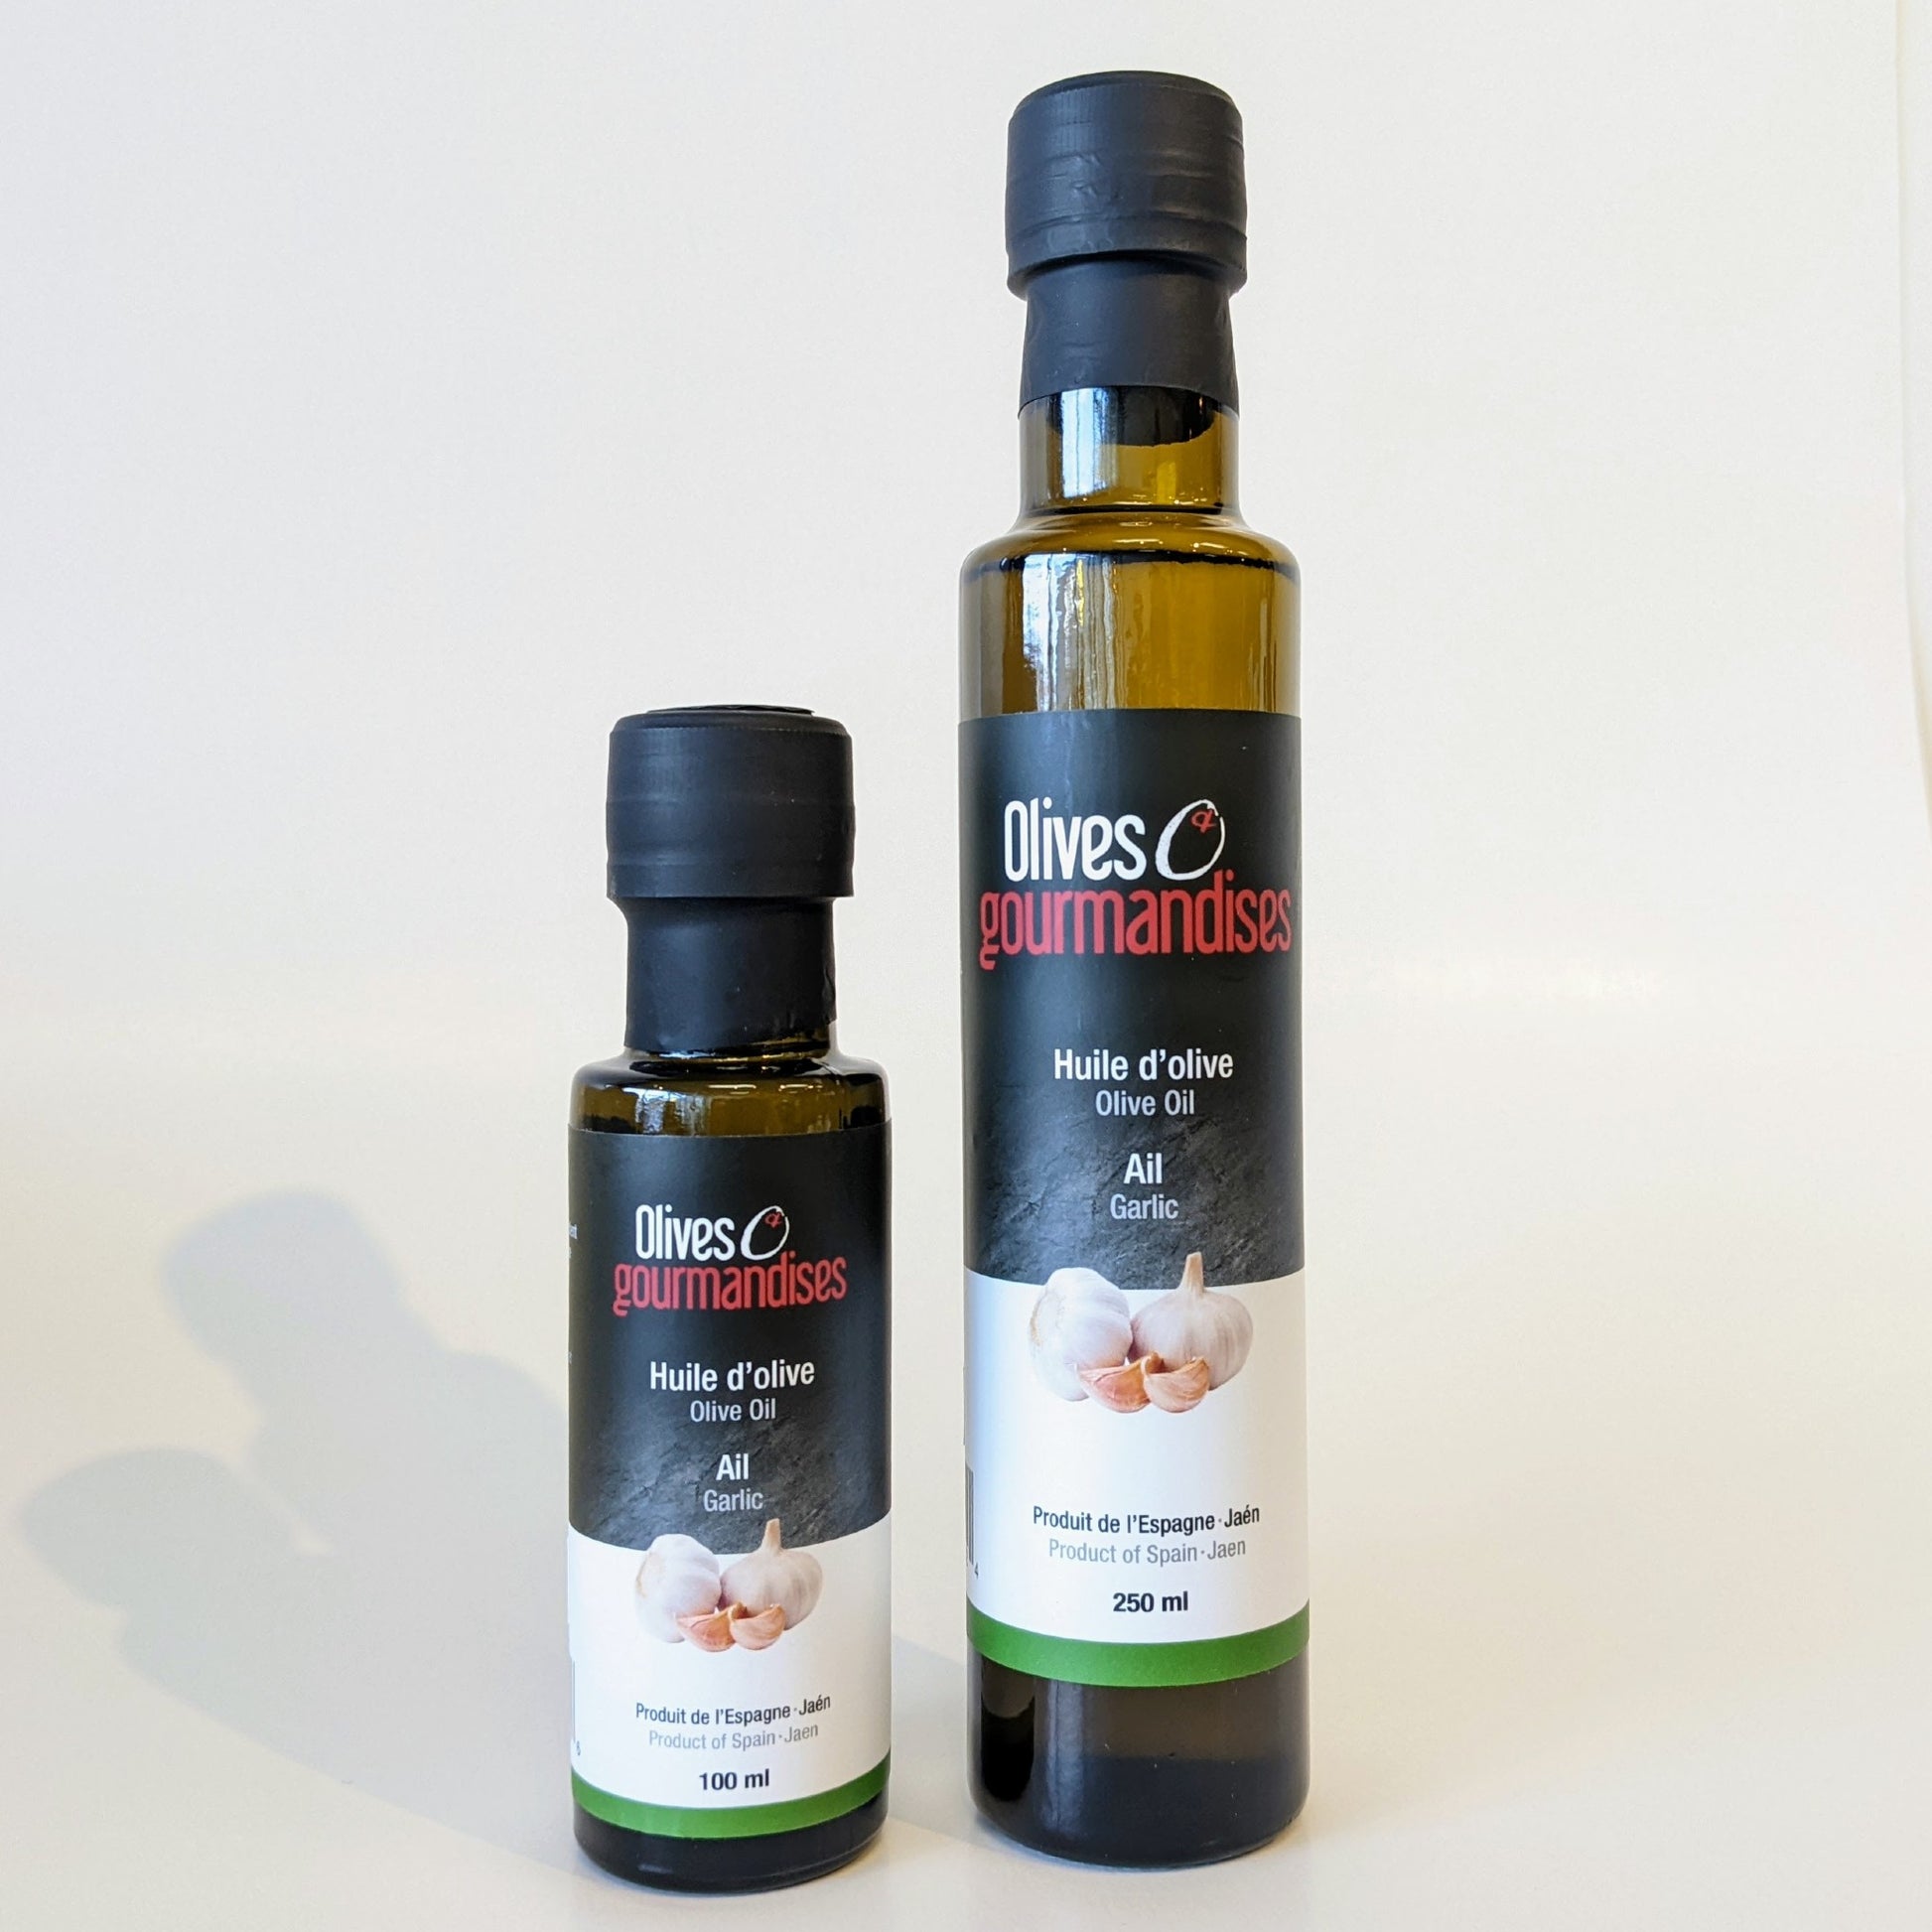 Choisissez votre coffret gourmand d'Huiles d'olive